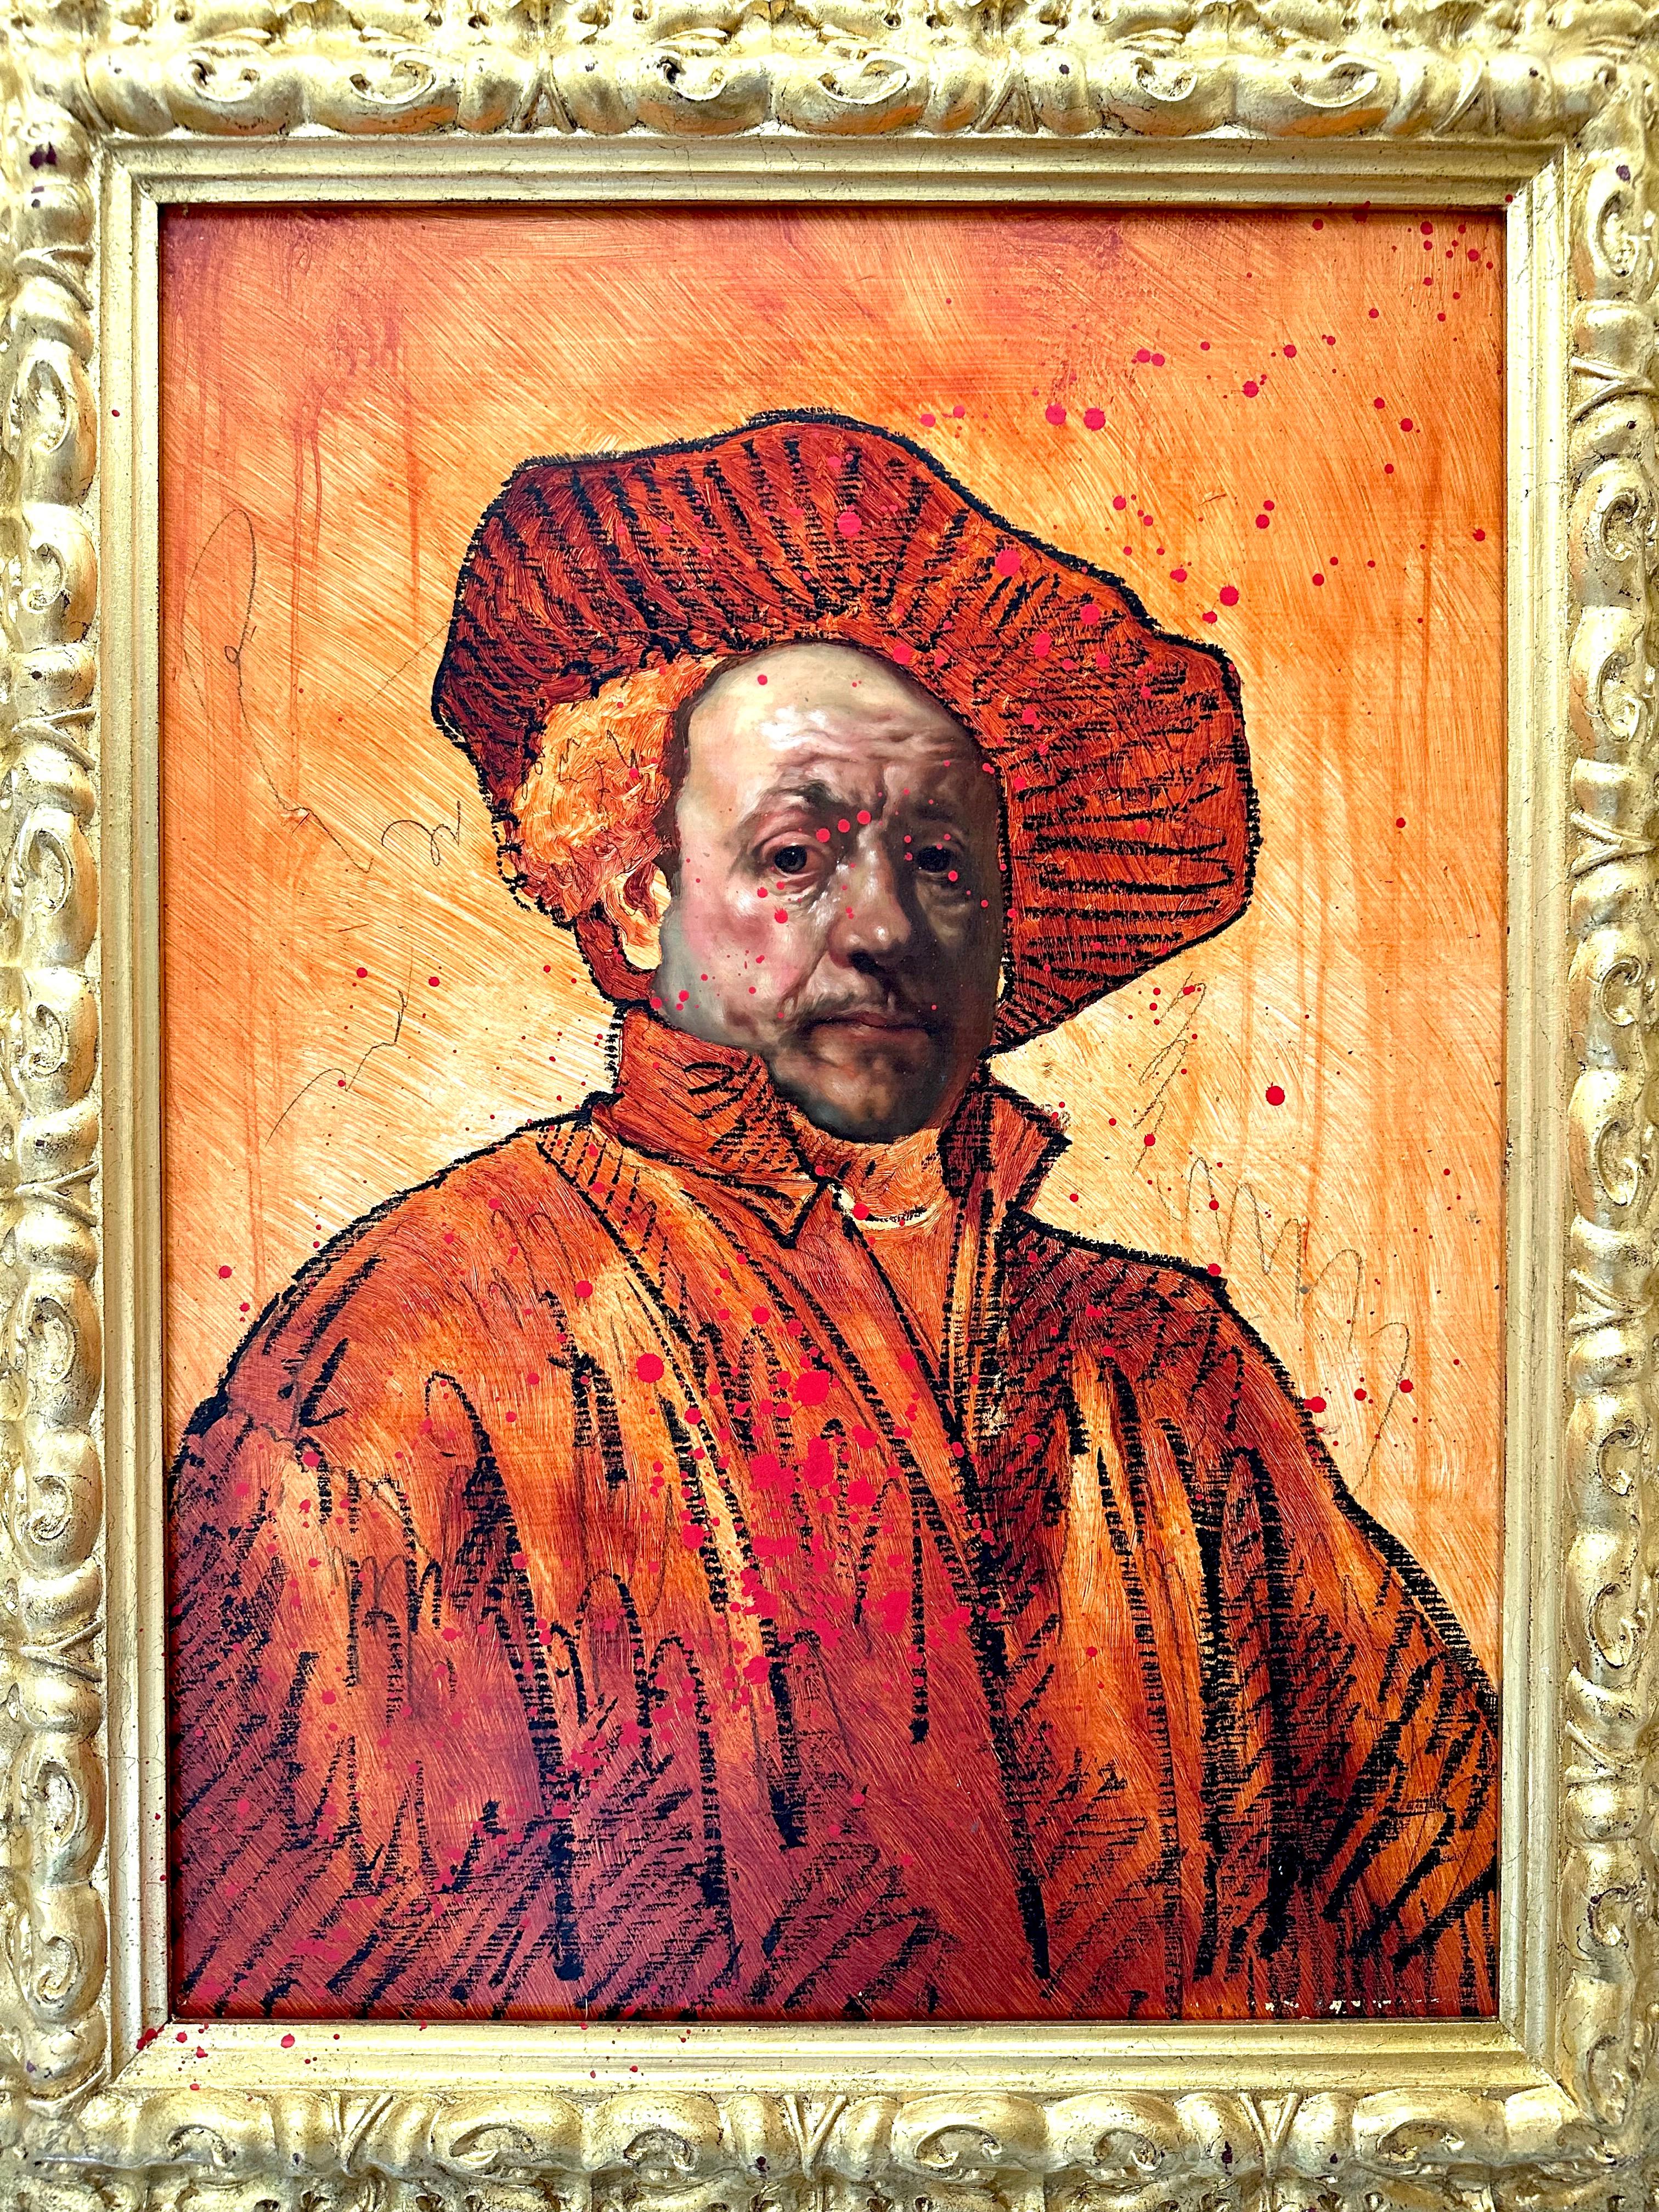 „Rembrandt El Chingon“ Gemälde (FRAMED) 23" x 17" Zoll von Isaac Pelayo

Medium: Öl, Ölstift und Aerosol auf Holz 
In antikem Rahmen (Holz und Blattgold)
Größe gerahmt: 29,5" x 23,5" Zoll

ÜBER DEN KÜNSTLER: 

Isaac Pelayo ist ein frontaler